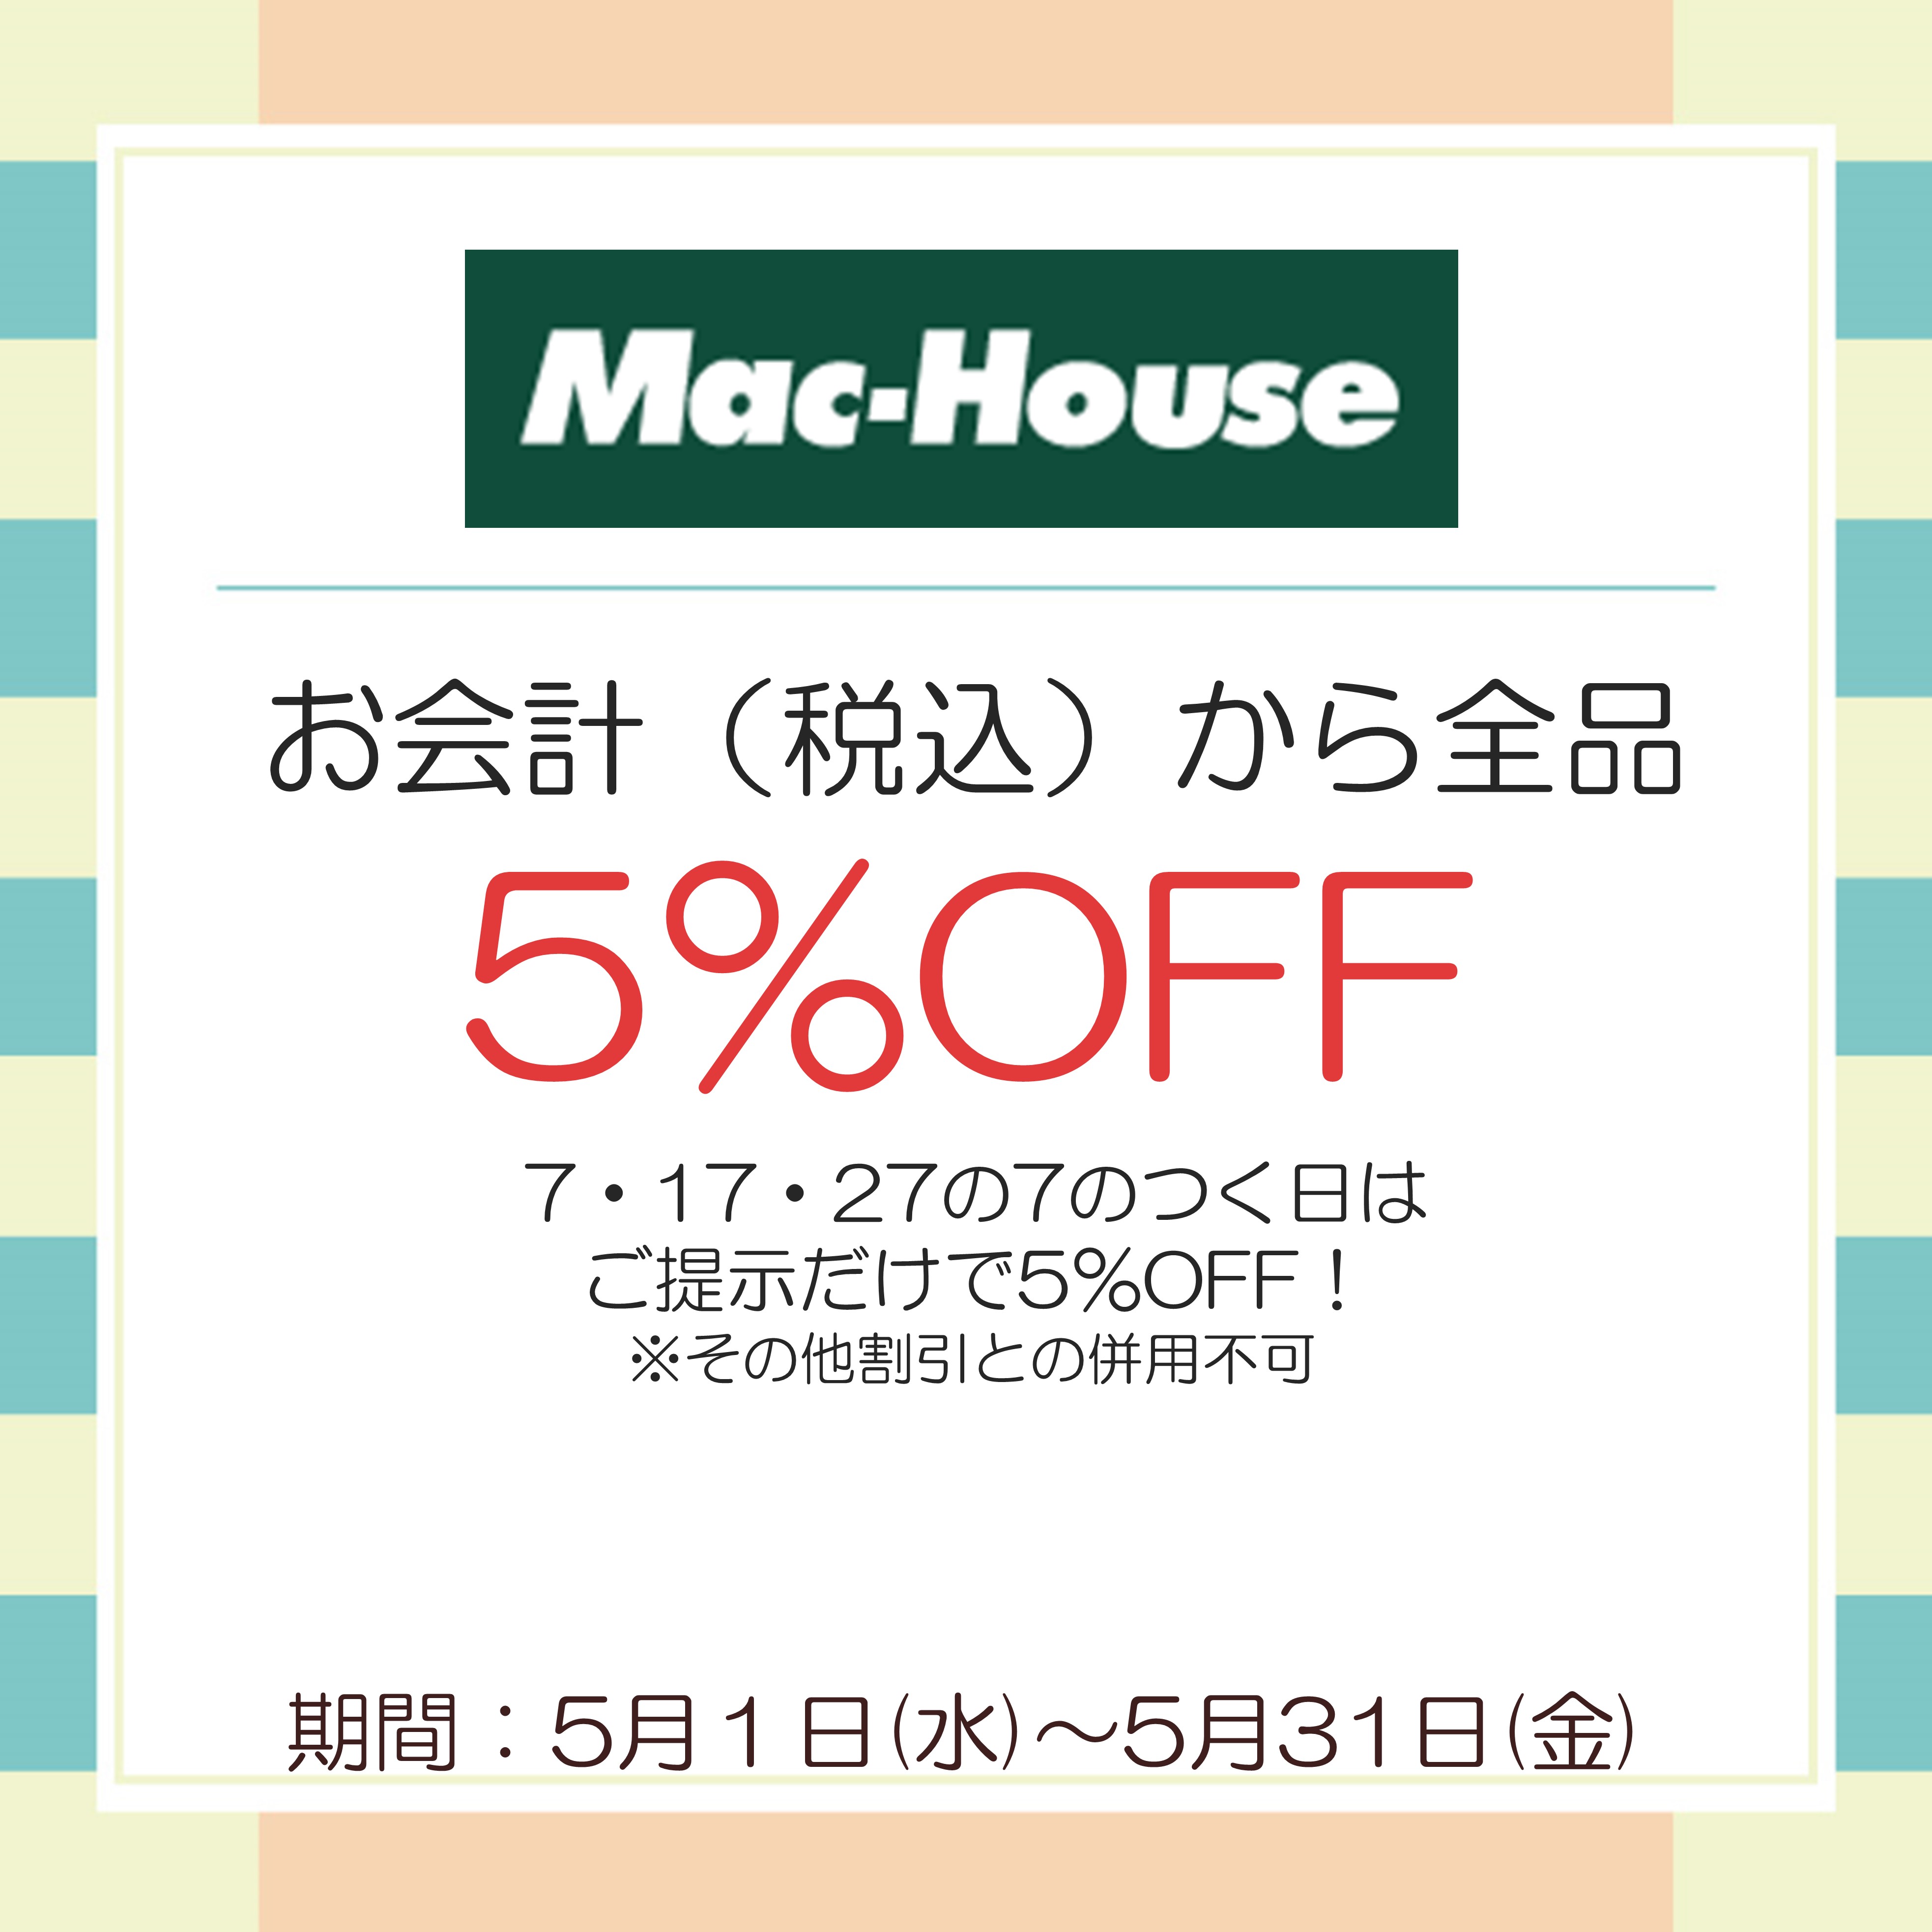 Mac-House.JPG